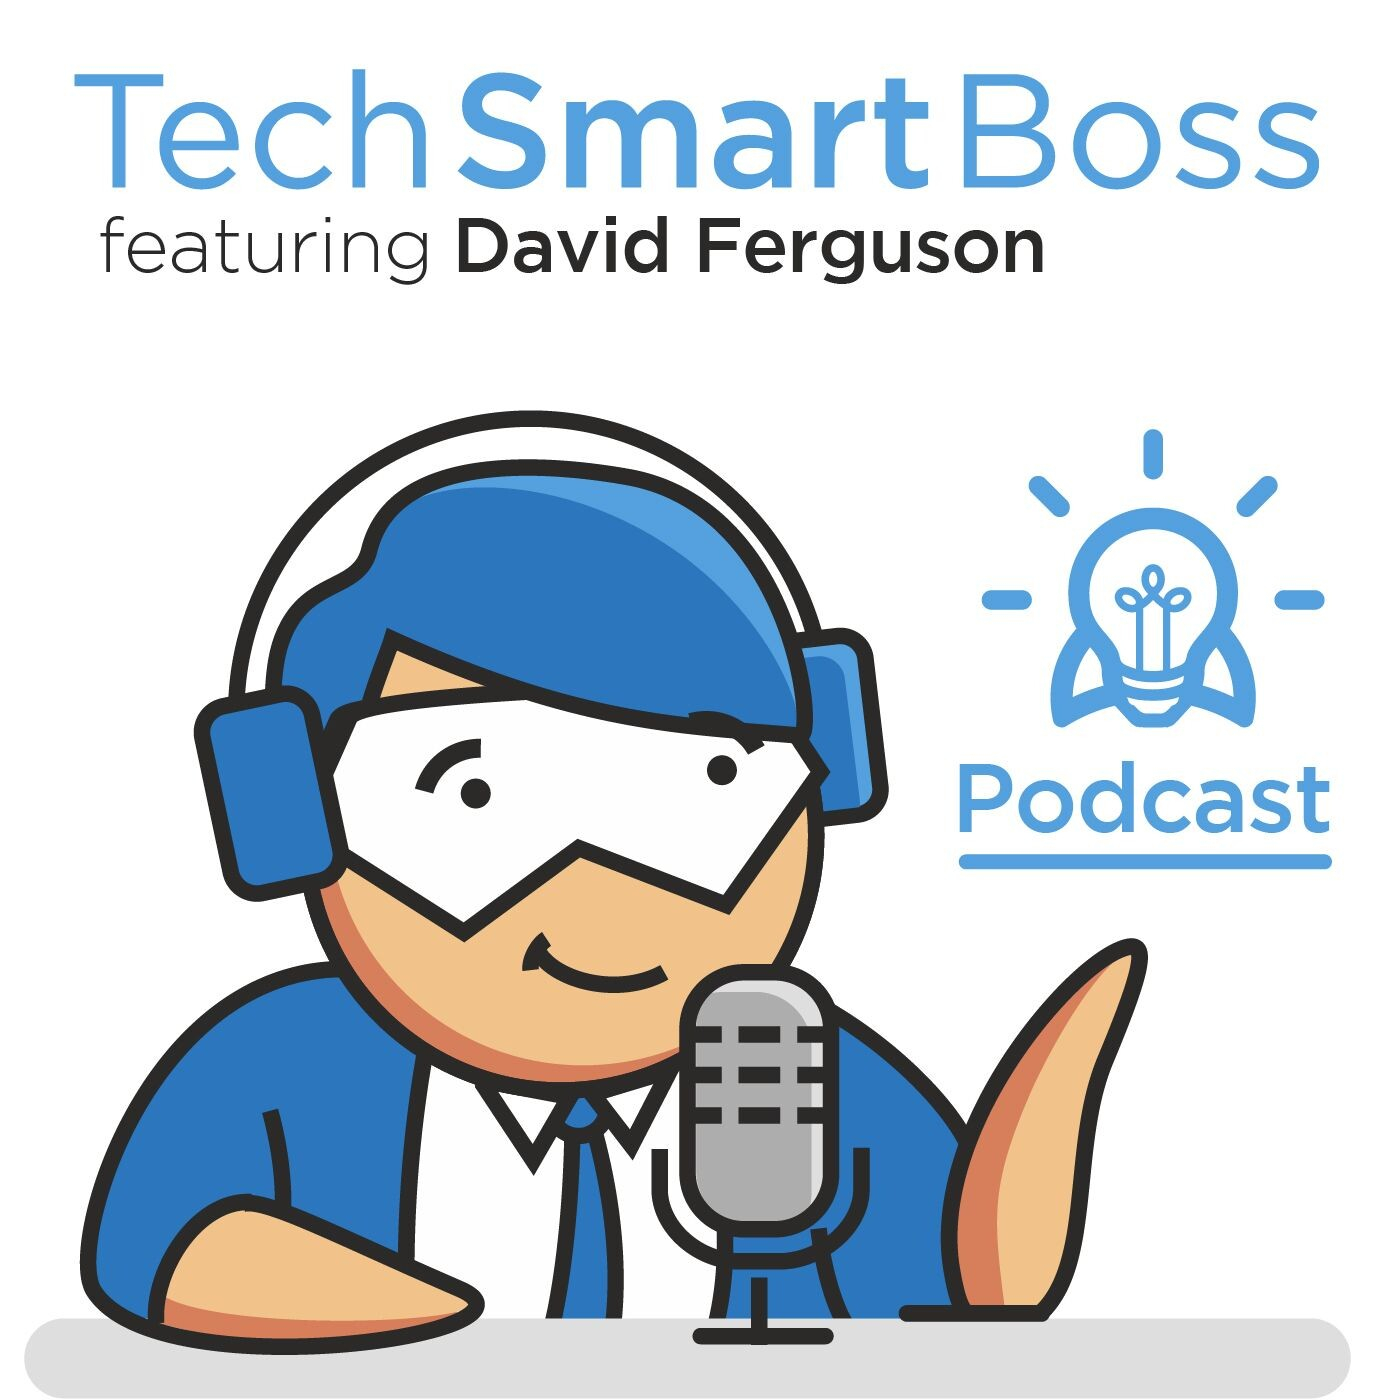 The Tech Smart Boss Podcast